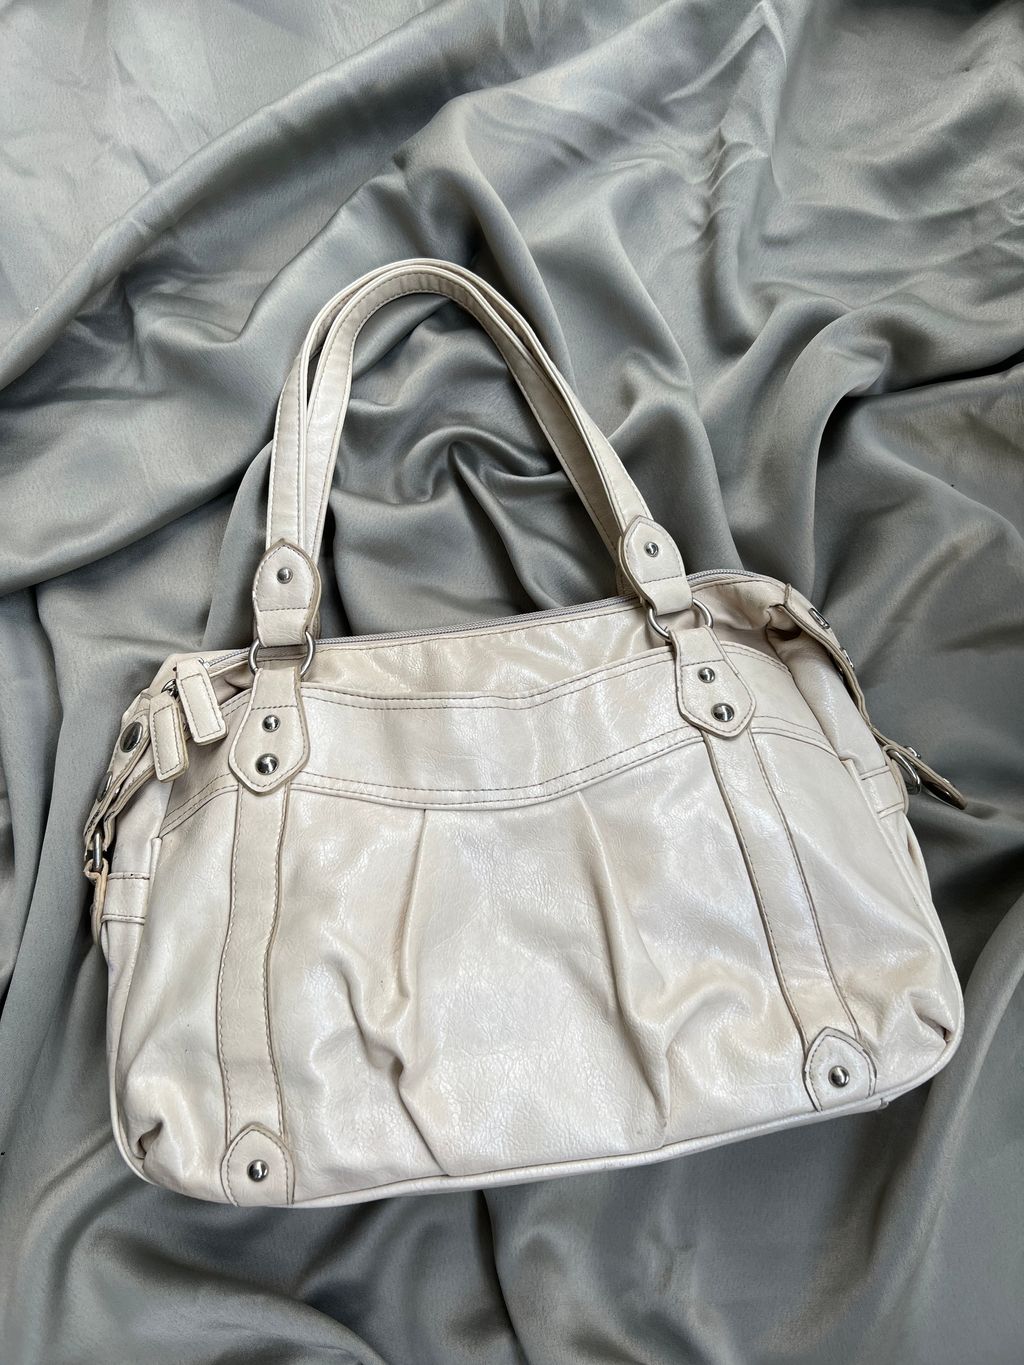 Genuine Leather Shoulder Bag by HushHush, Japan. – udou.my